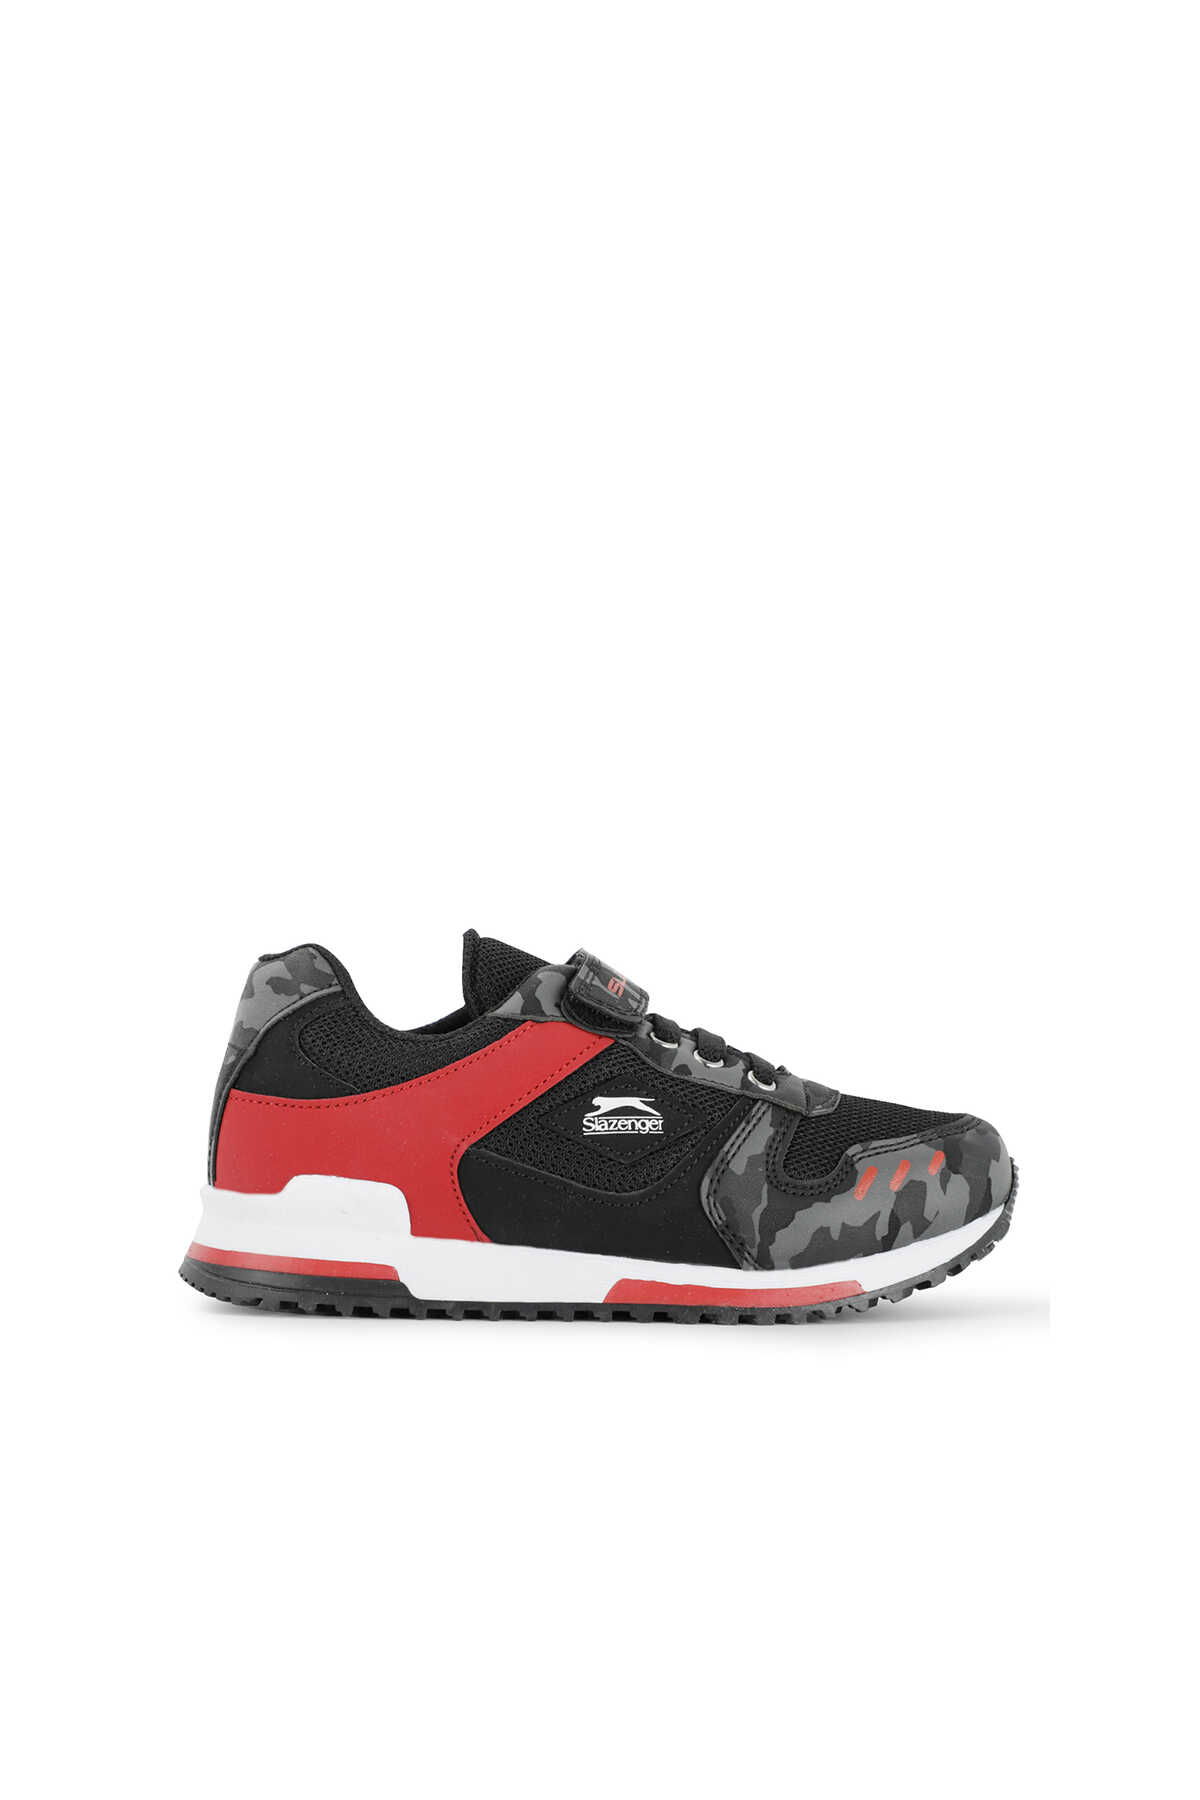 Slazenger - EDMOND KTN Sneaker Erkek Çocuk Ayakkabı Siyah Kamuflaj